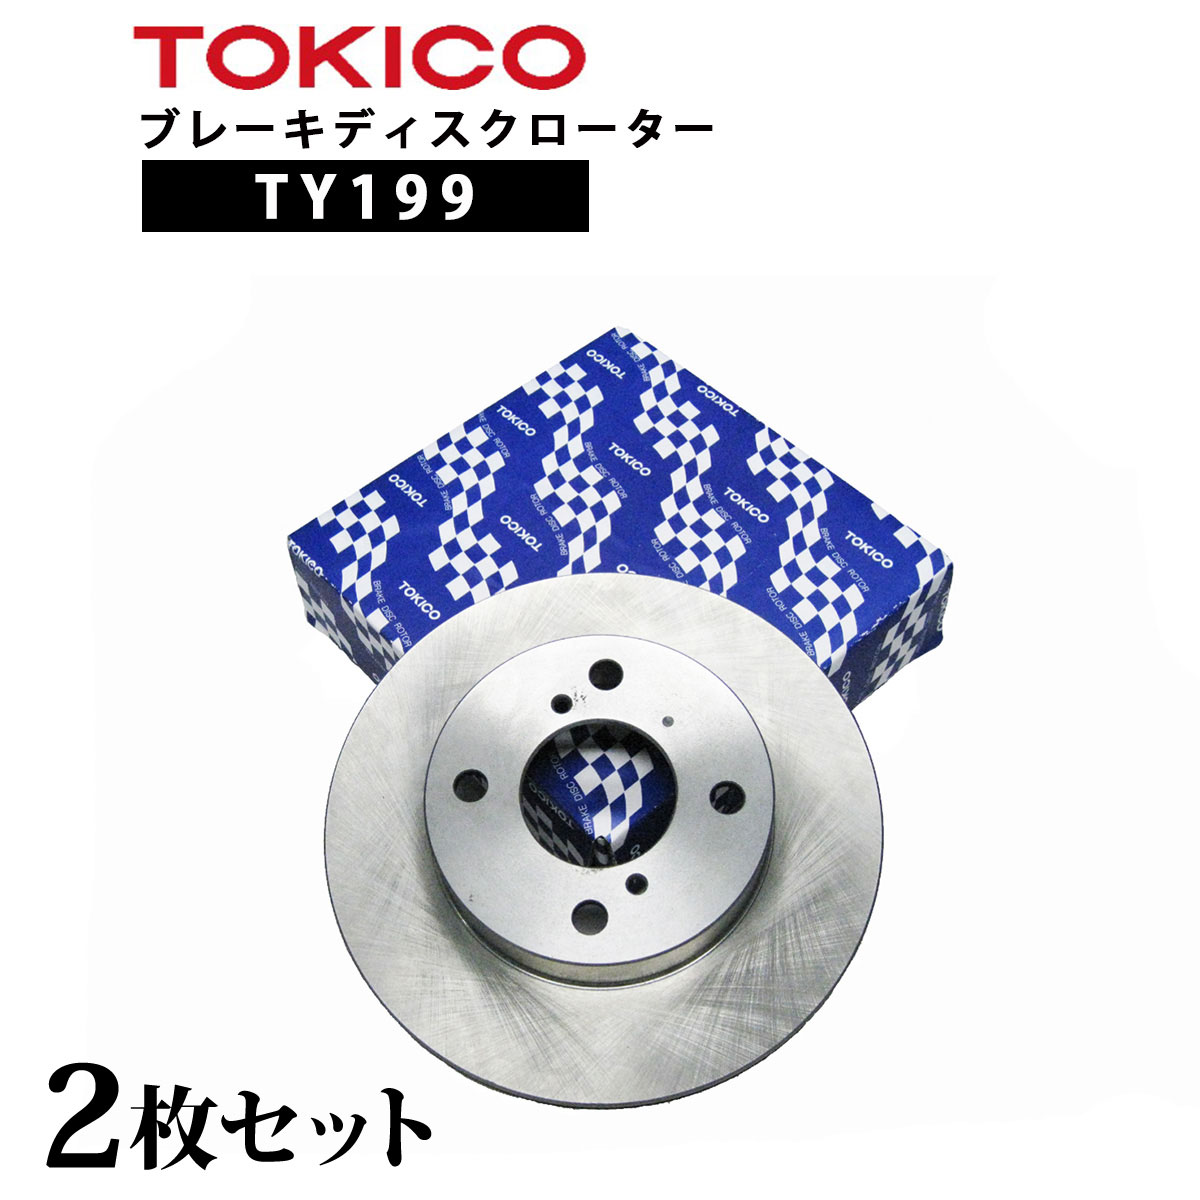 TY199 TOKICO ブレーキディスクローター フロント 2枚 左右セット トキコ 日立| 適合 純正 トヨタ 43512-16130 ラウム F EXZ15 他社 E2054 T6-006B